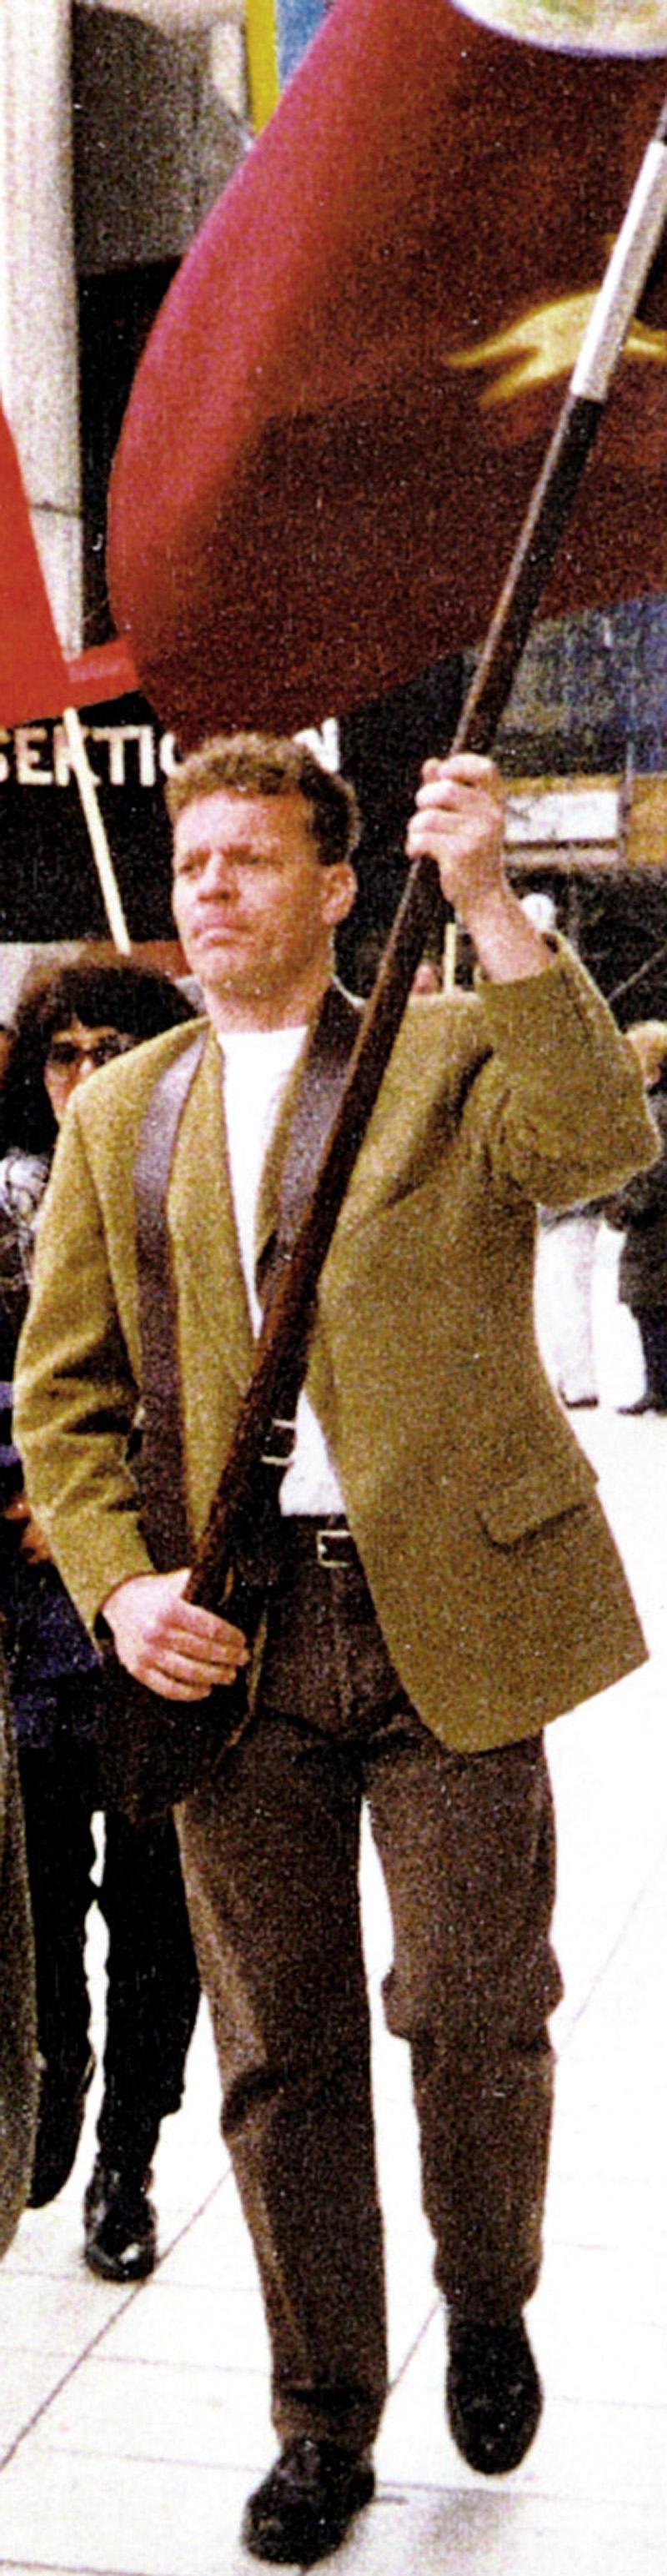 Fackföreningensmannen Björn Söderberg mördades av nazister 12 oktober 1999.